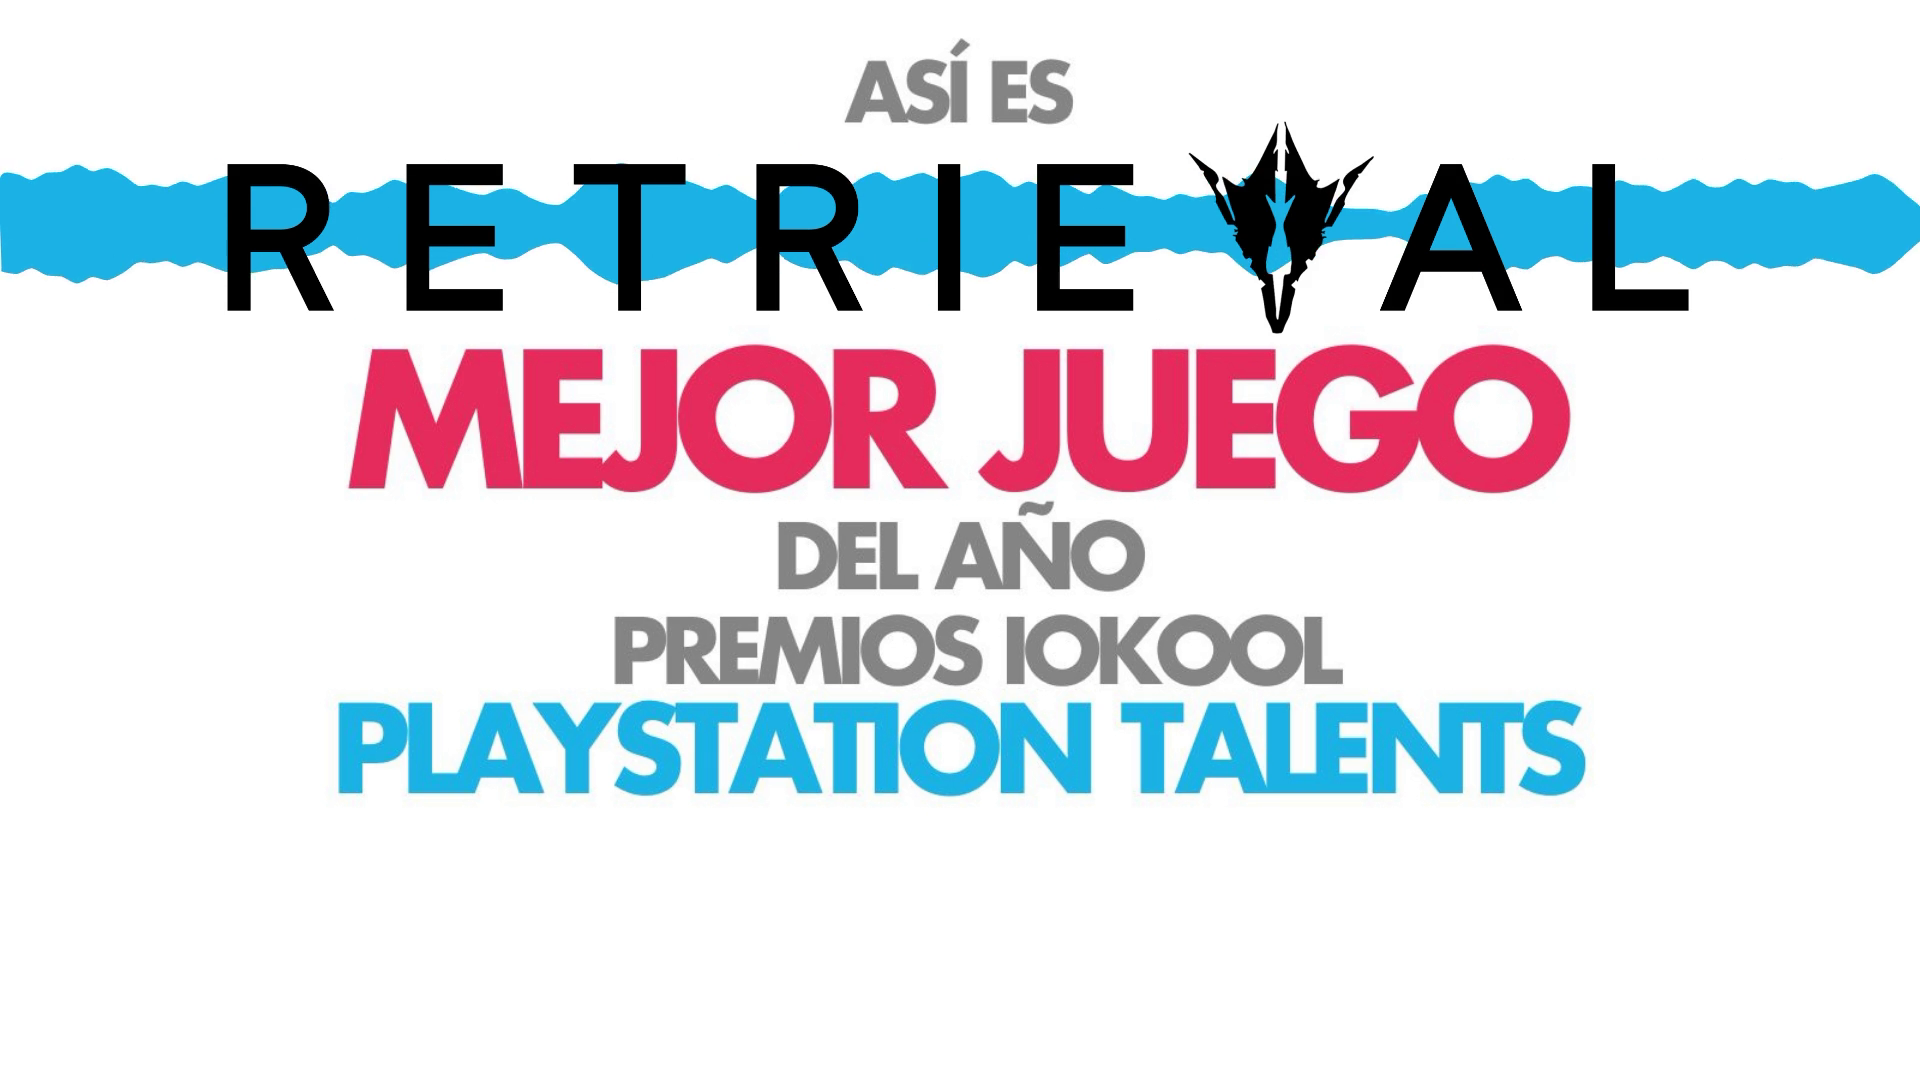 Hablamos con Pau Moreno de 333 Studios, creadores de Retrieval, el Mejor Juego del Año de los Premios iokool PlayStation Talents